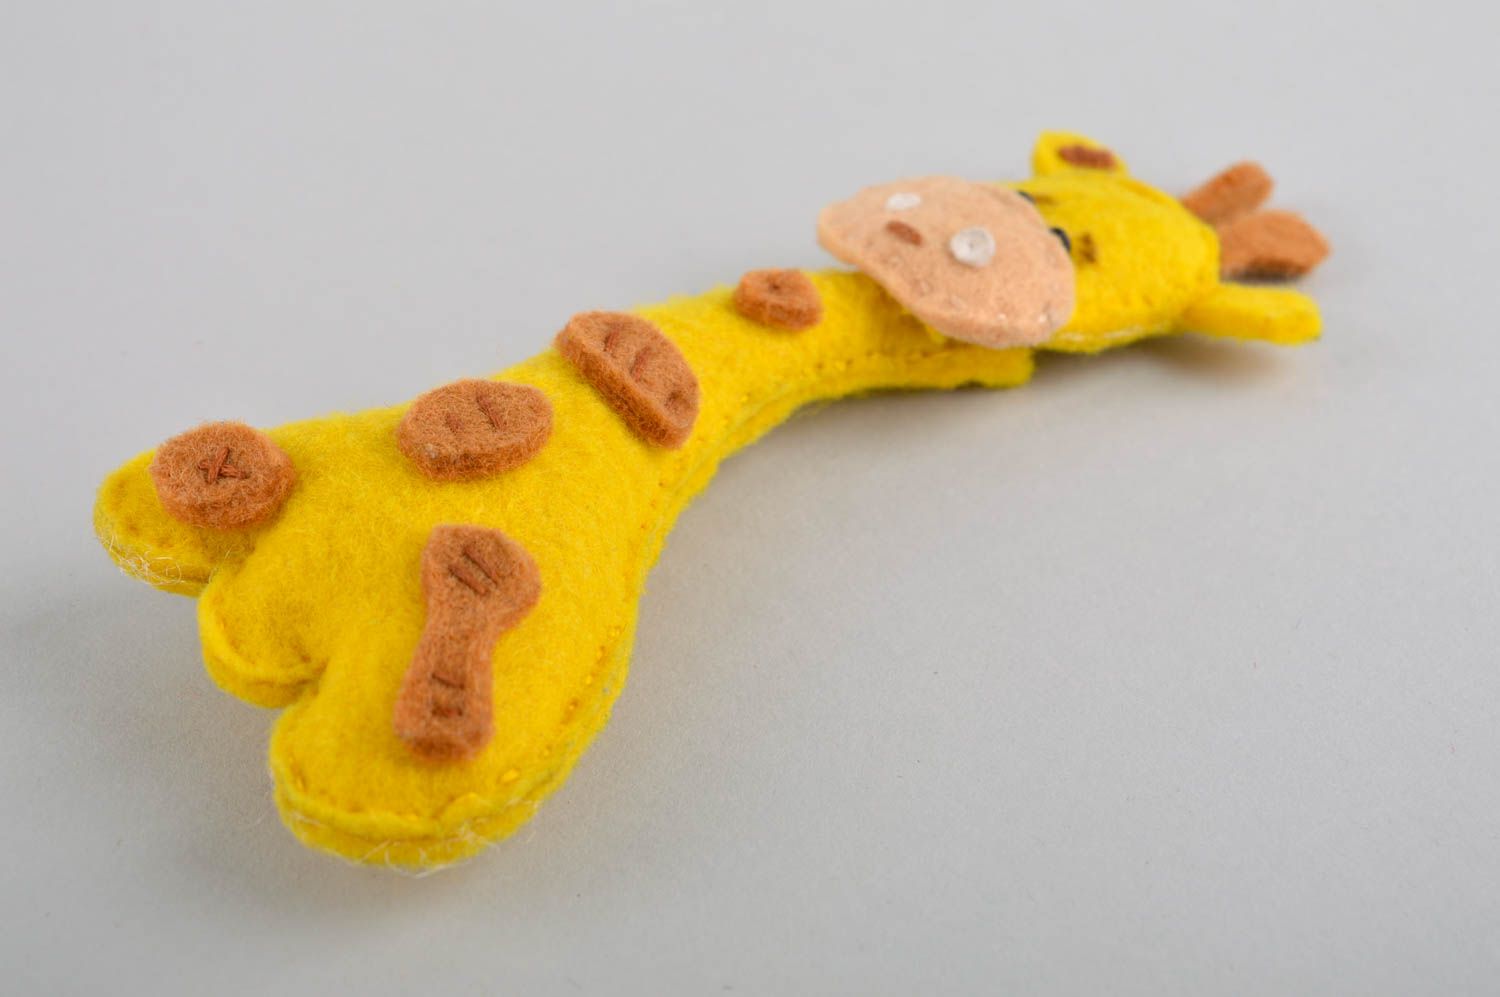 Handmade Filz Tier Giraffe Spielzeug Geschenk Idee aus Filzwolle gelb knuddelig foto 4